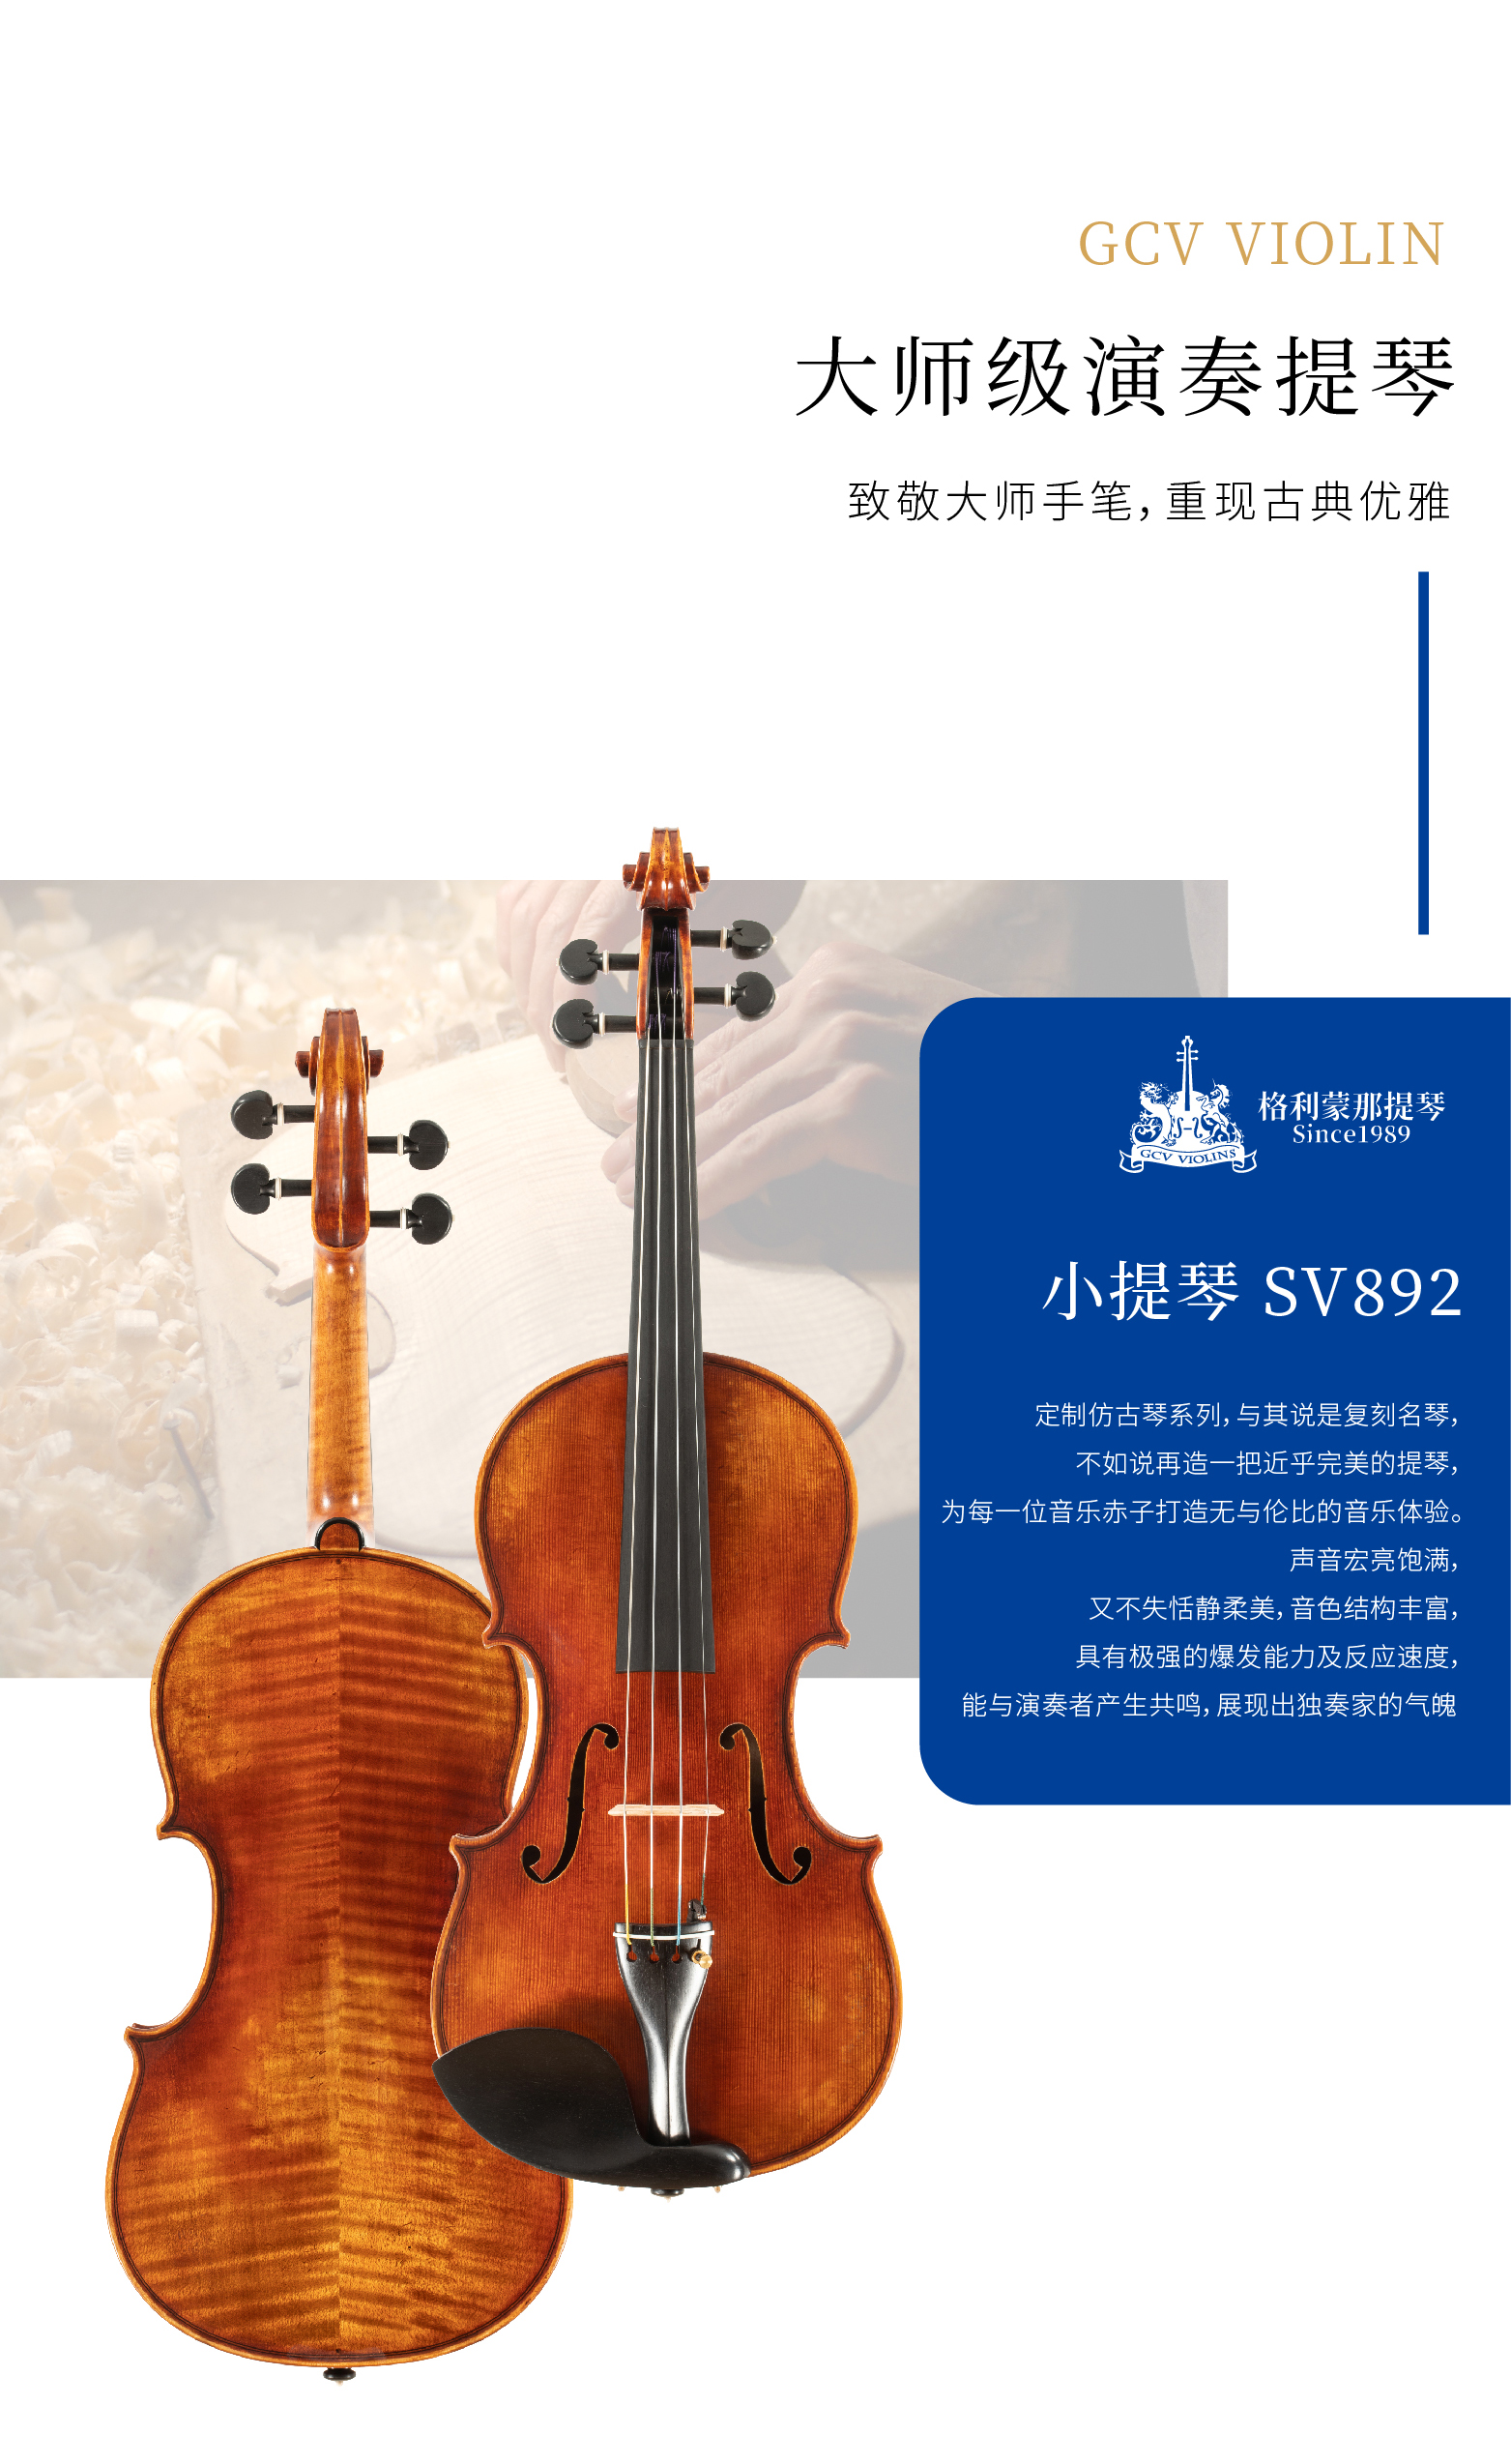 熙珑乐器专营店-详情-v1-2_SV892小提琴_复制_PC-副本-2_02.jpg